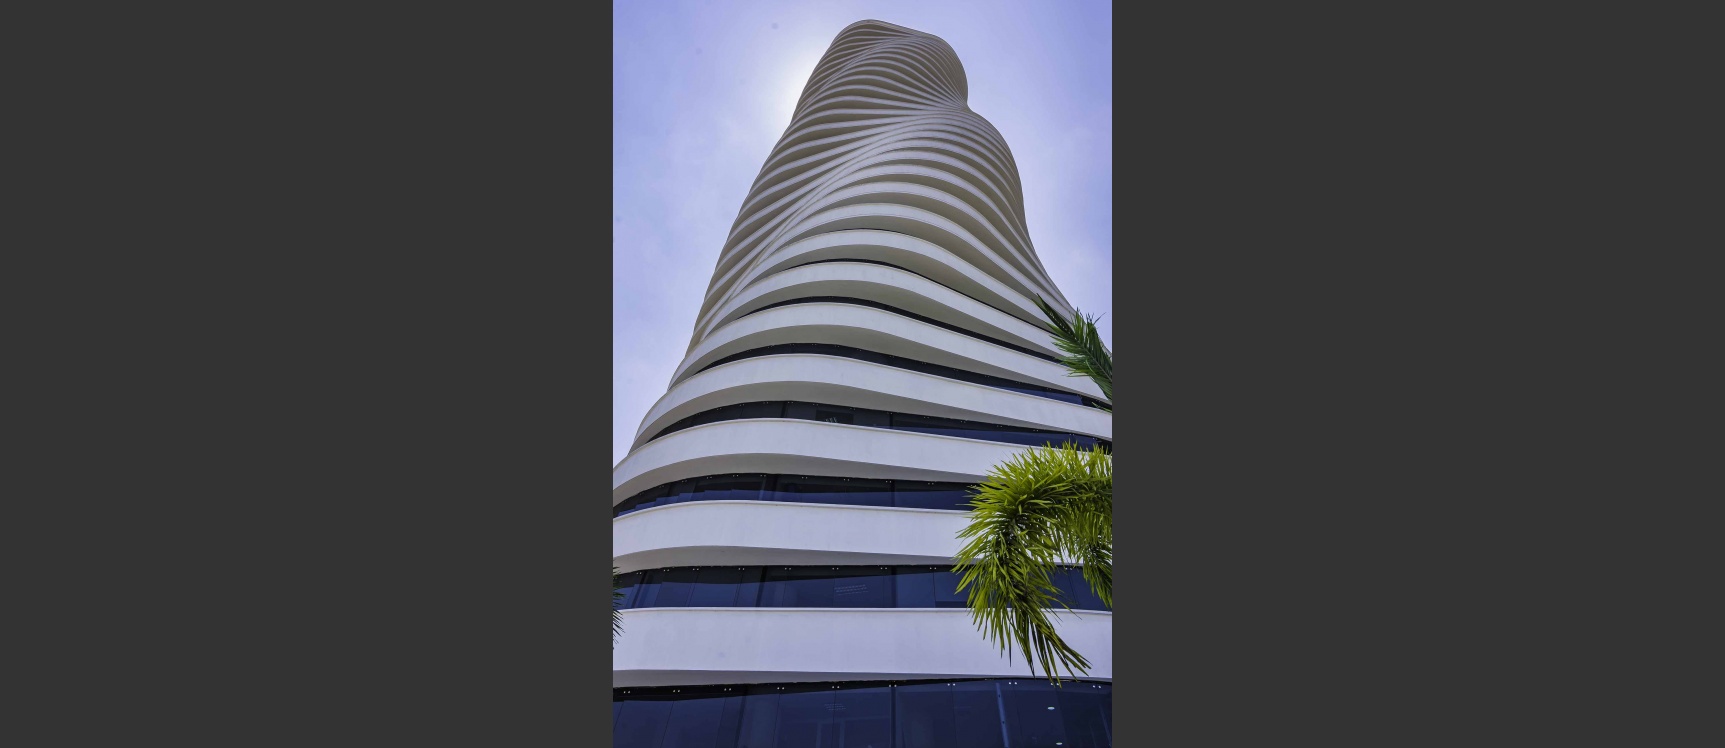 GeoBienes - Oficina en Alquiler en Edificio The Point, Puerto Santa Ana, Guayaquil - Plusvalia Guayaquil Casas de venta y alquiler Inmobiliaria Ecuador